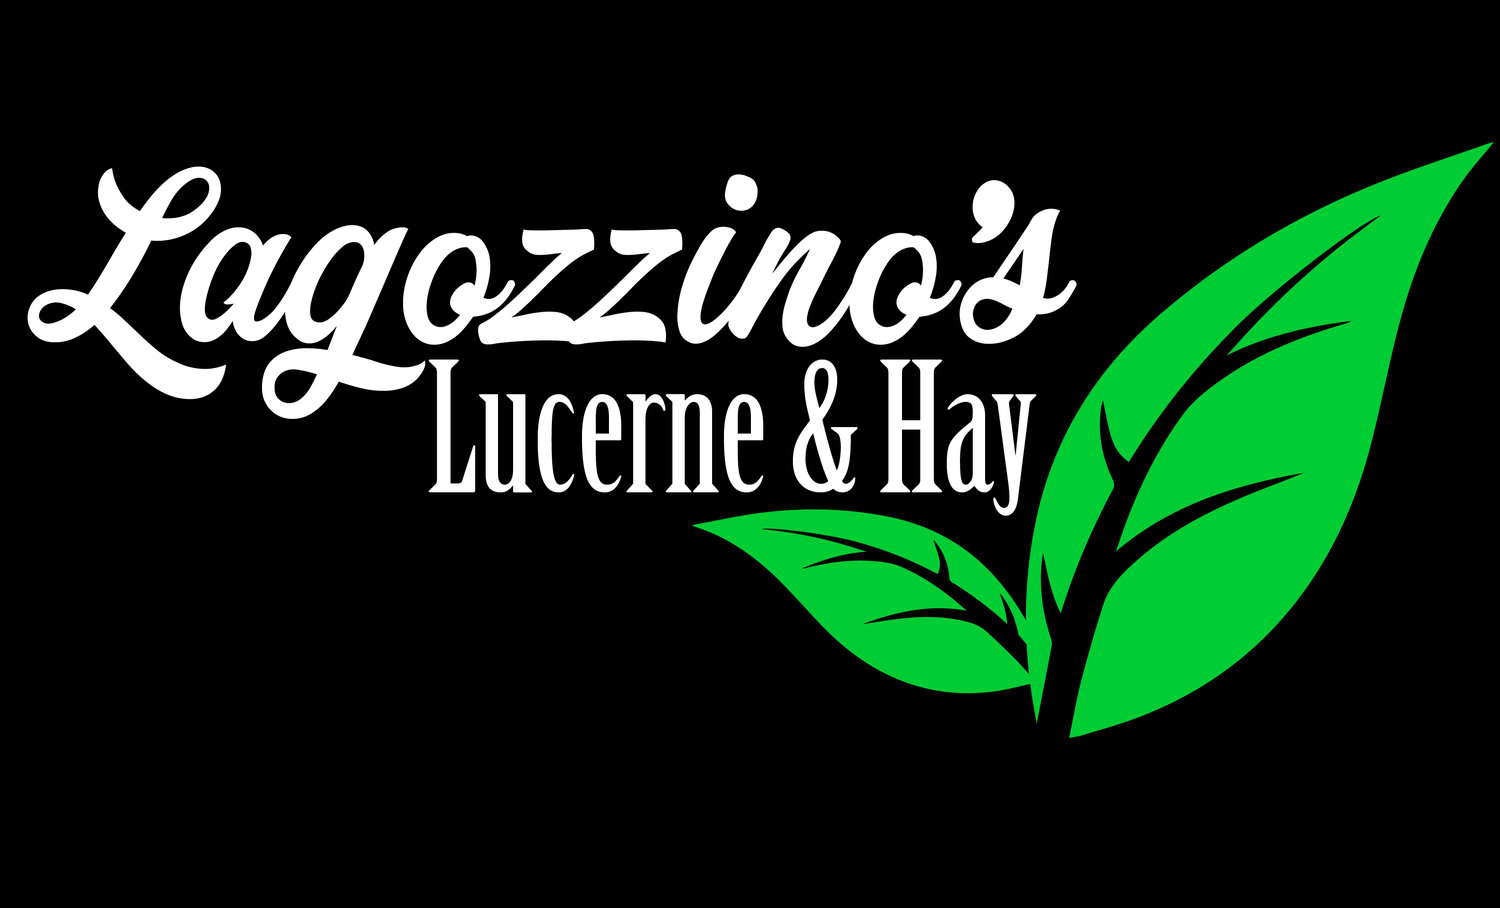 Lagozzino's Lucerne & Hay